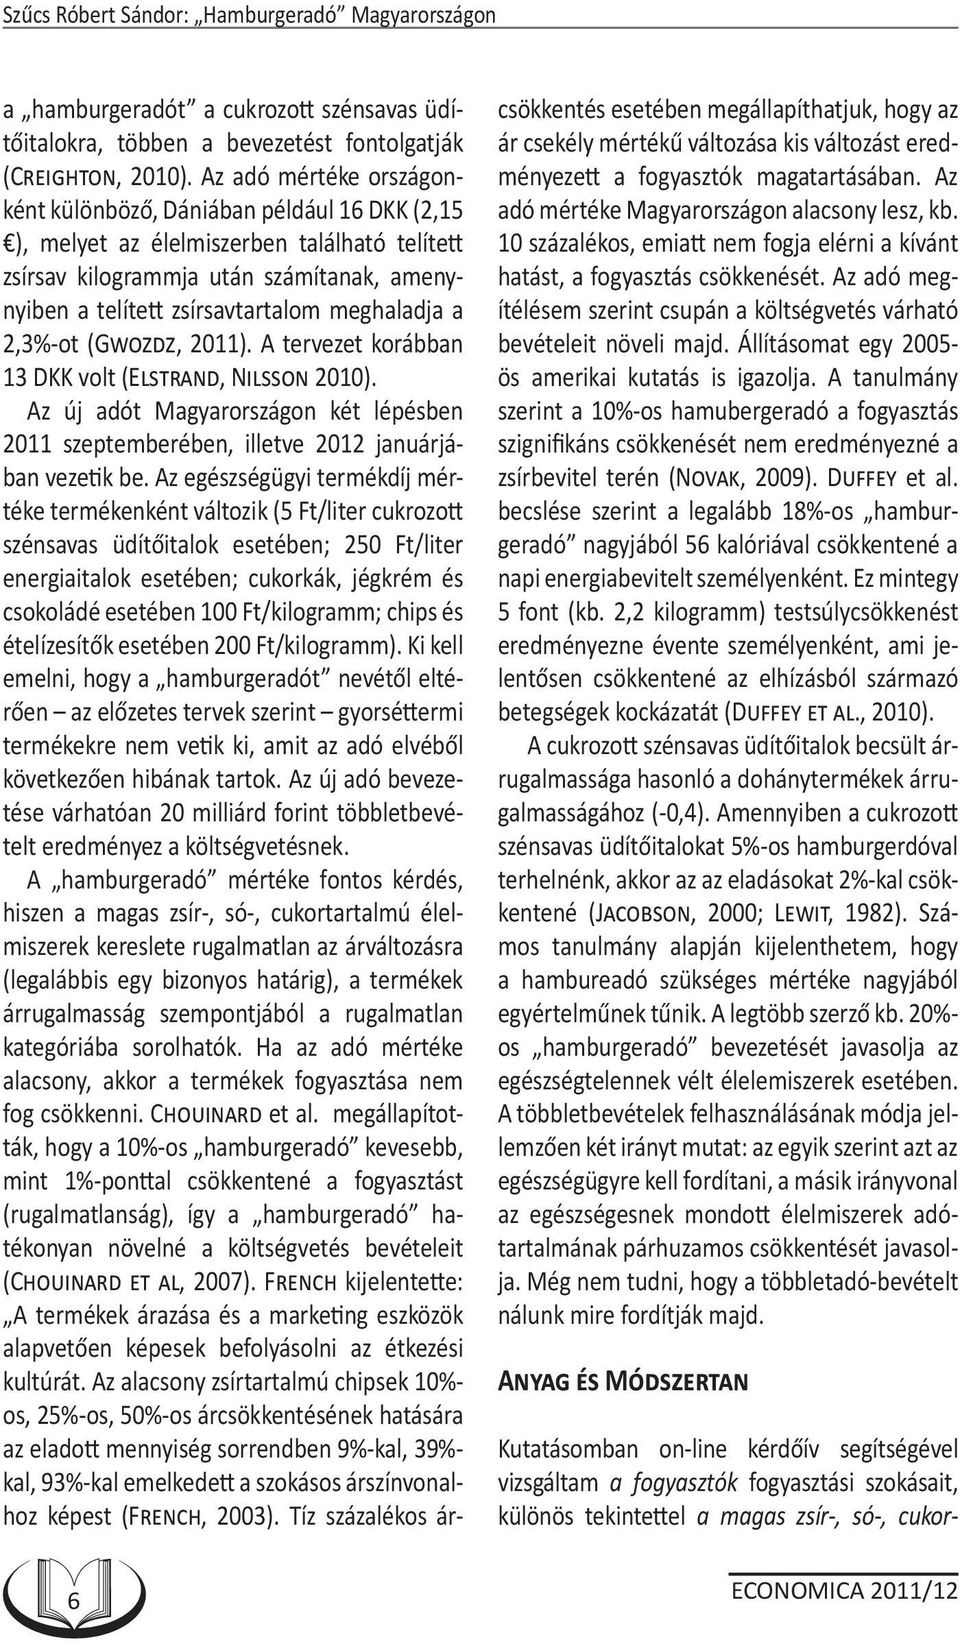 meghaladja a 2,3%-ot (GWOZDZ, 2011). A tervezet korábban 13 DKK volt (ELSTRAND, NILSSON 2010). Az új adót Magyarországon két lépésben 2011 szeptemberében, illetve 2012 januárjában vezetik be.